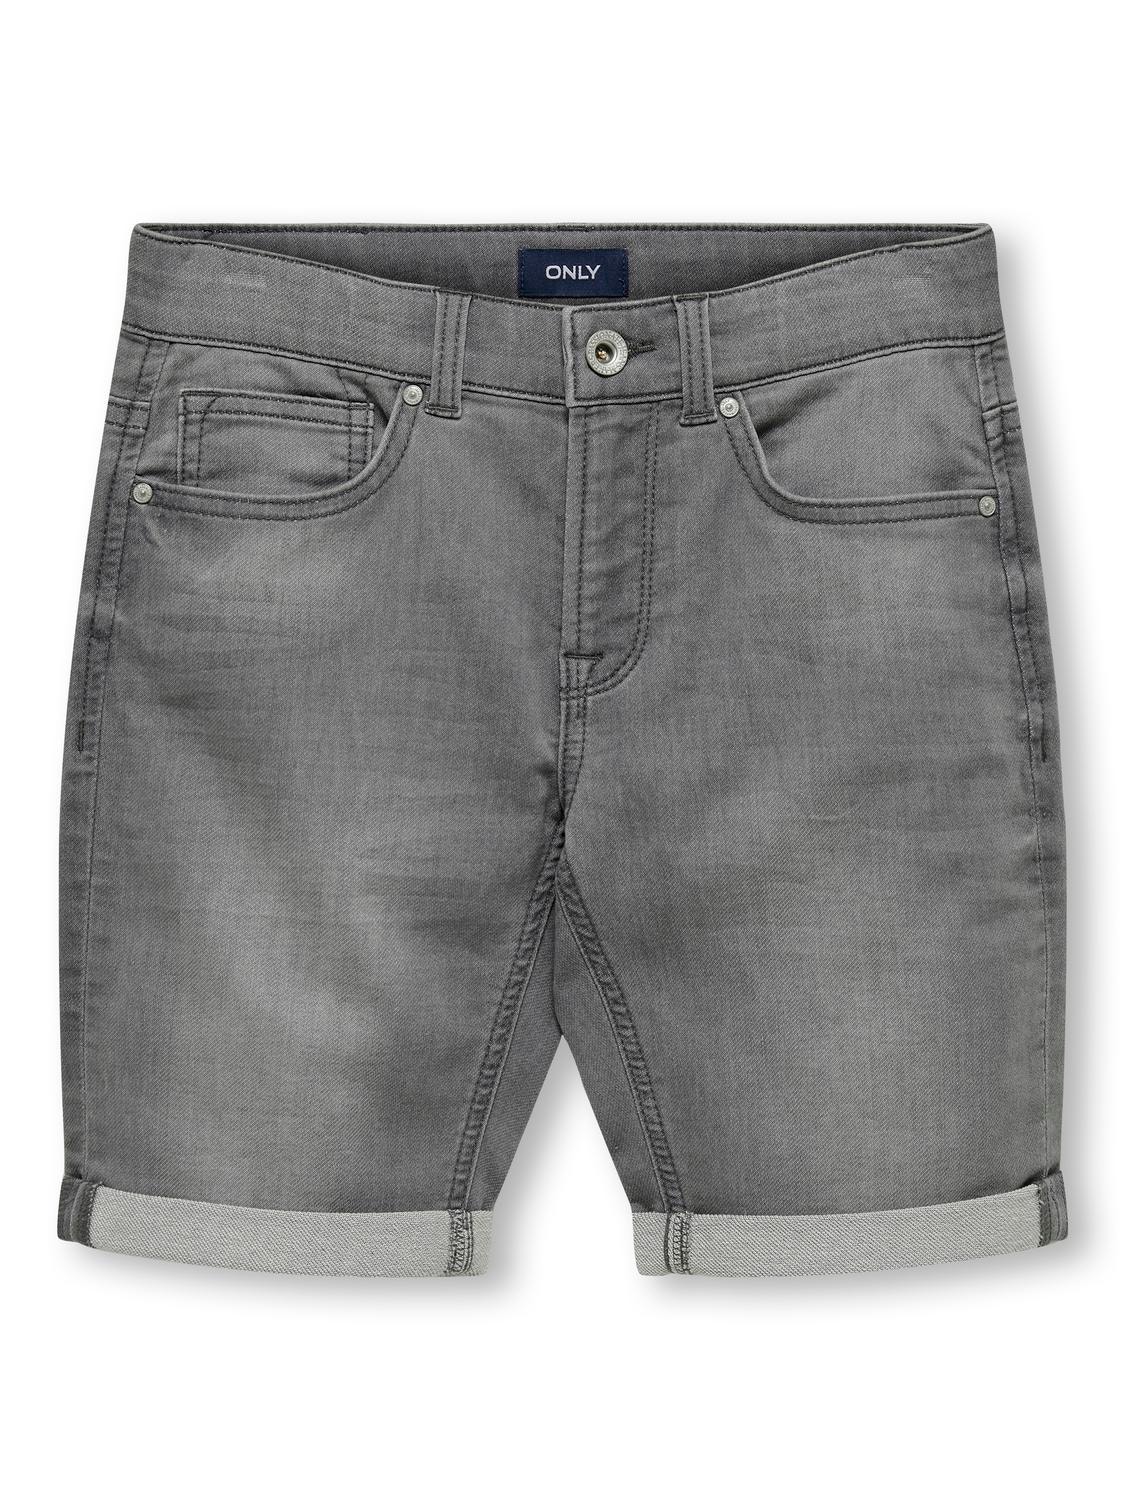 ONLY Skinny Fit Säume zum Umschlagen Jeans -Light Grey Denim - 15283232